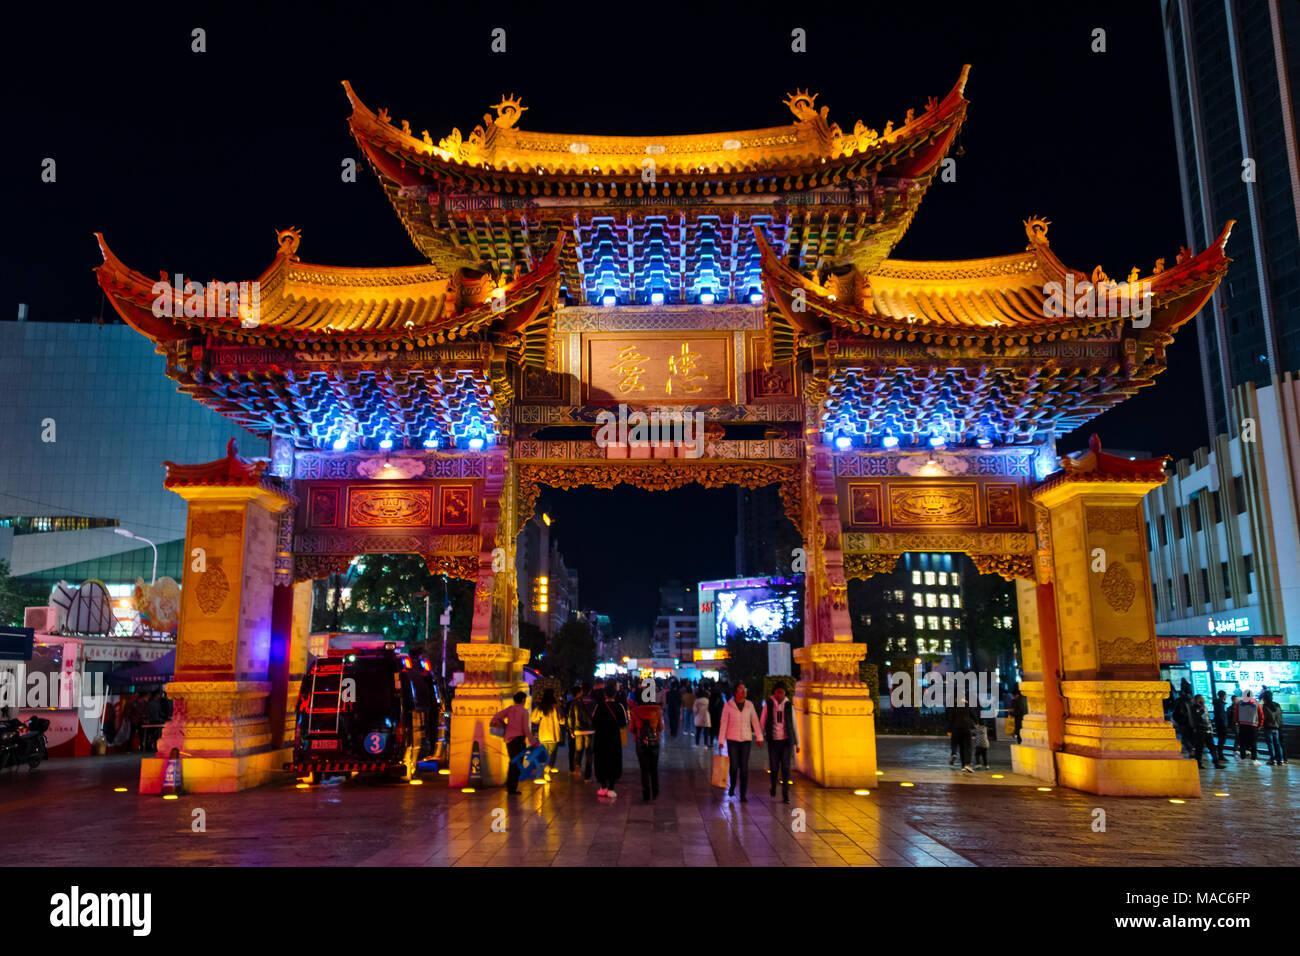 Vue de la nuit de l'or et de Jade Archway Coq, Kunming, Province du Yunnan, Chine Banque D'Images